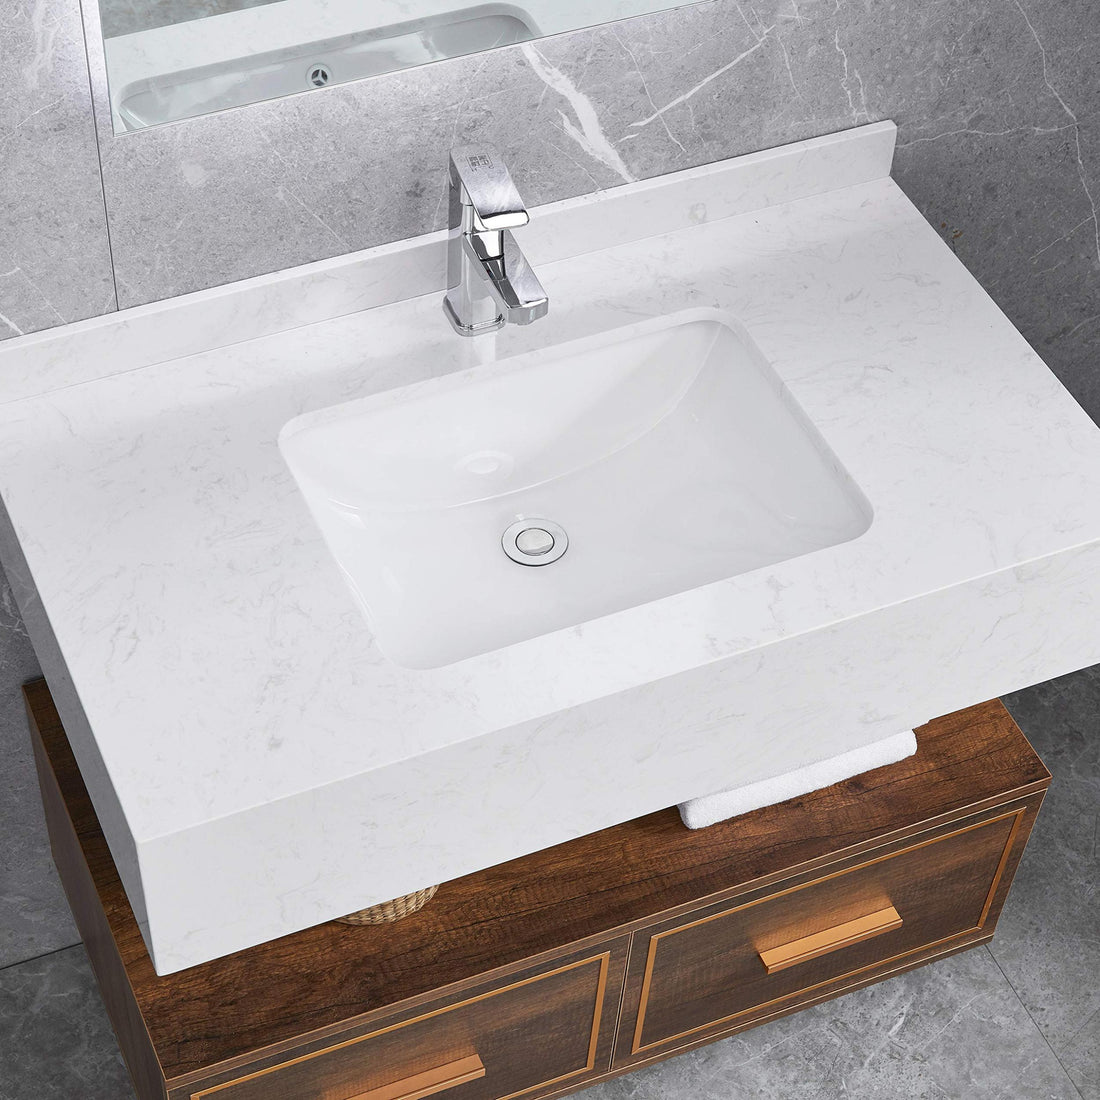 White Rectangular Undermount Bathroom Sink With